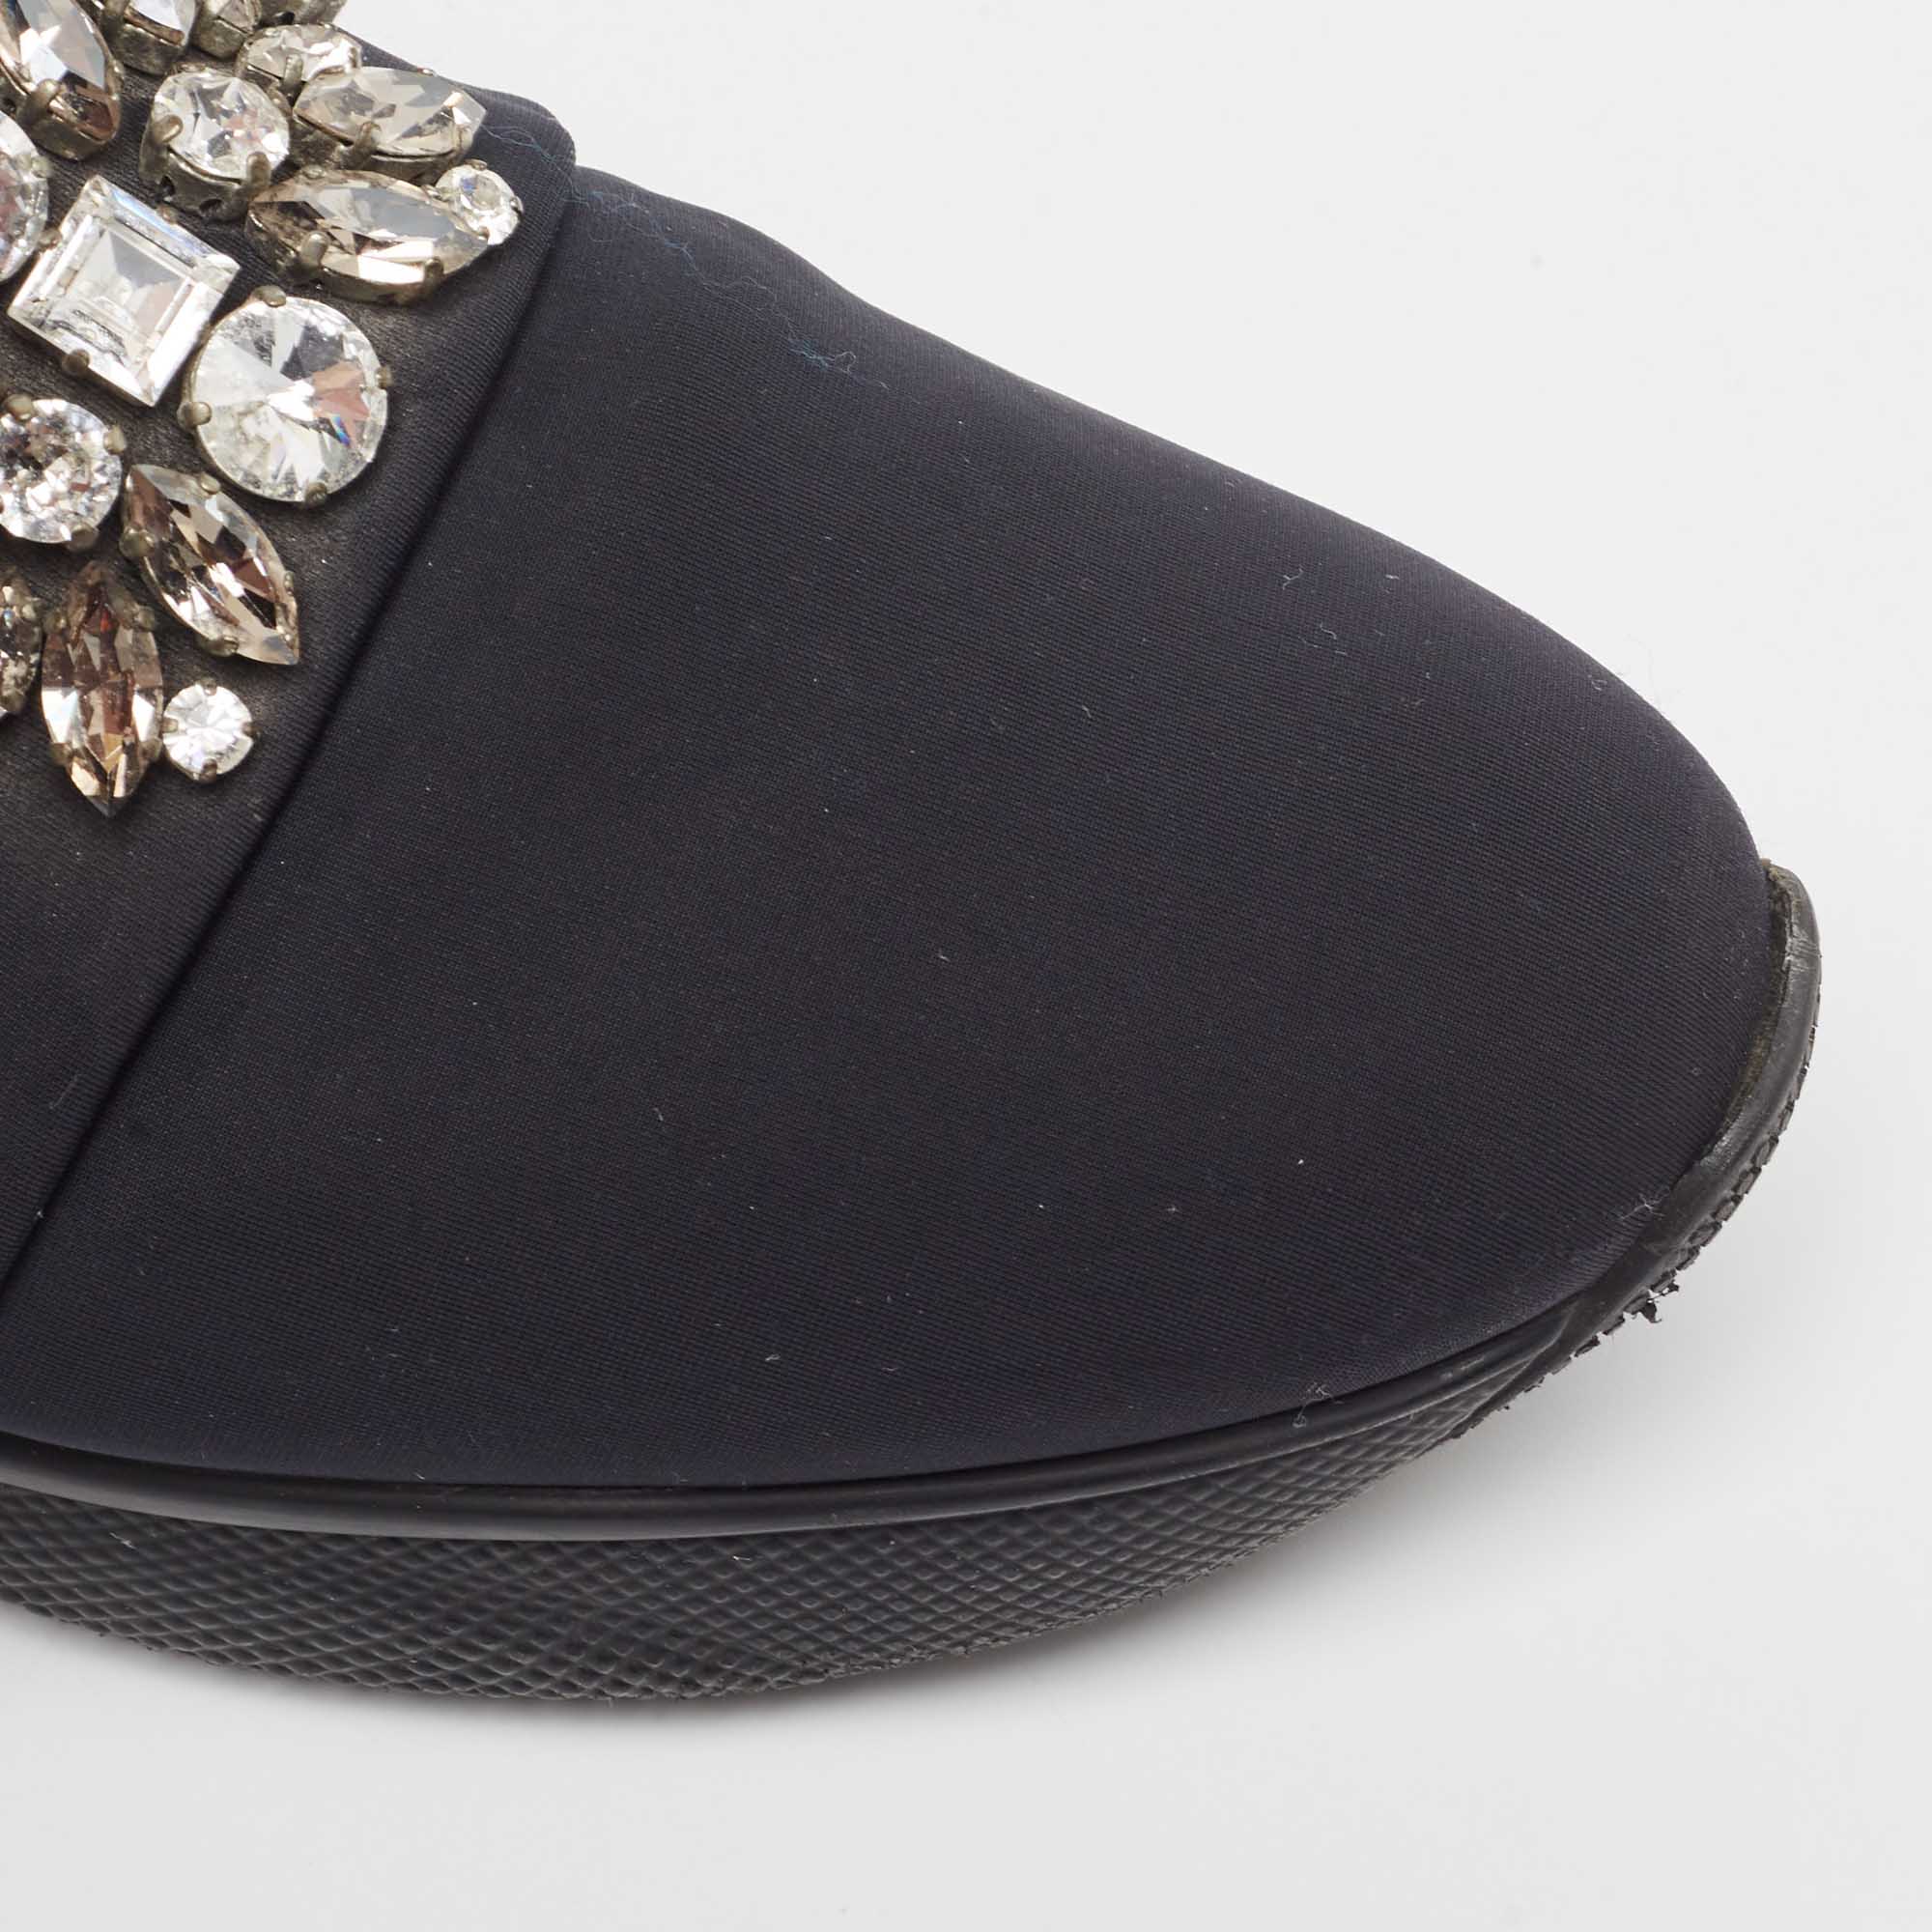 Prada Black Neoprene Crystal Embellished Slip On Sneakers Size 39